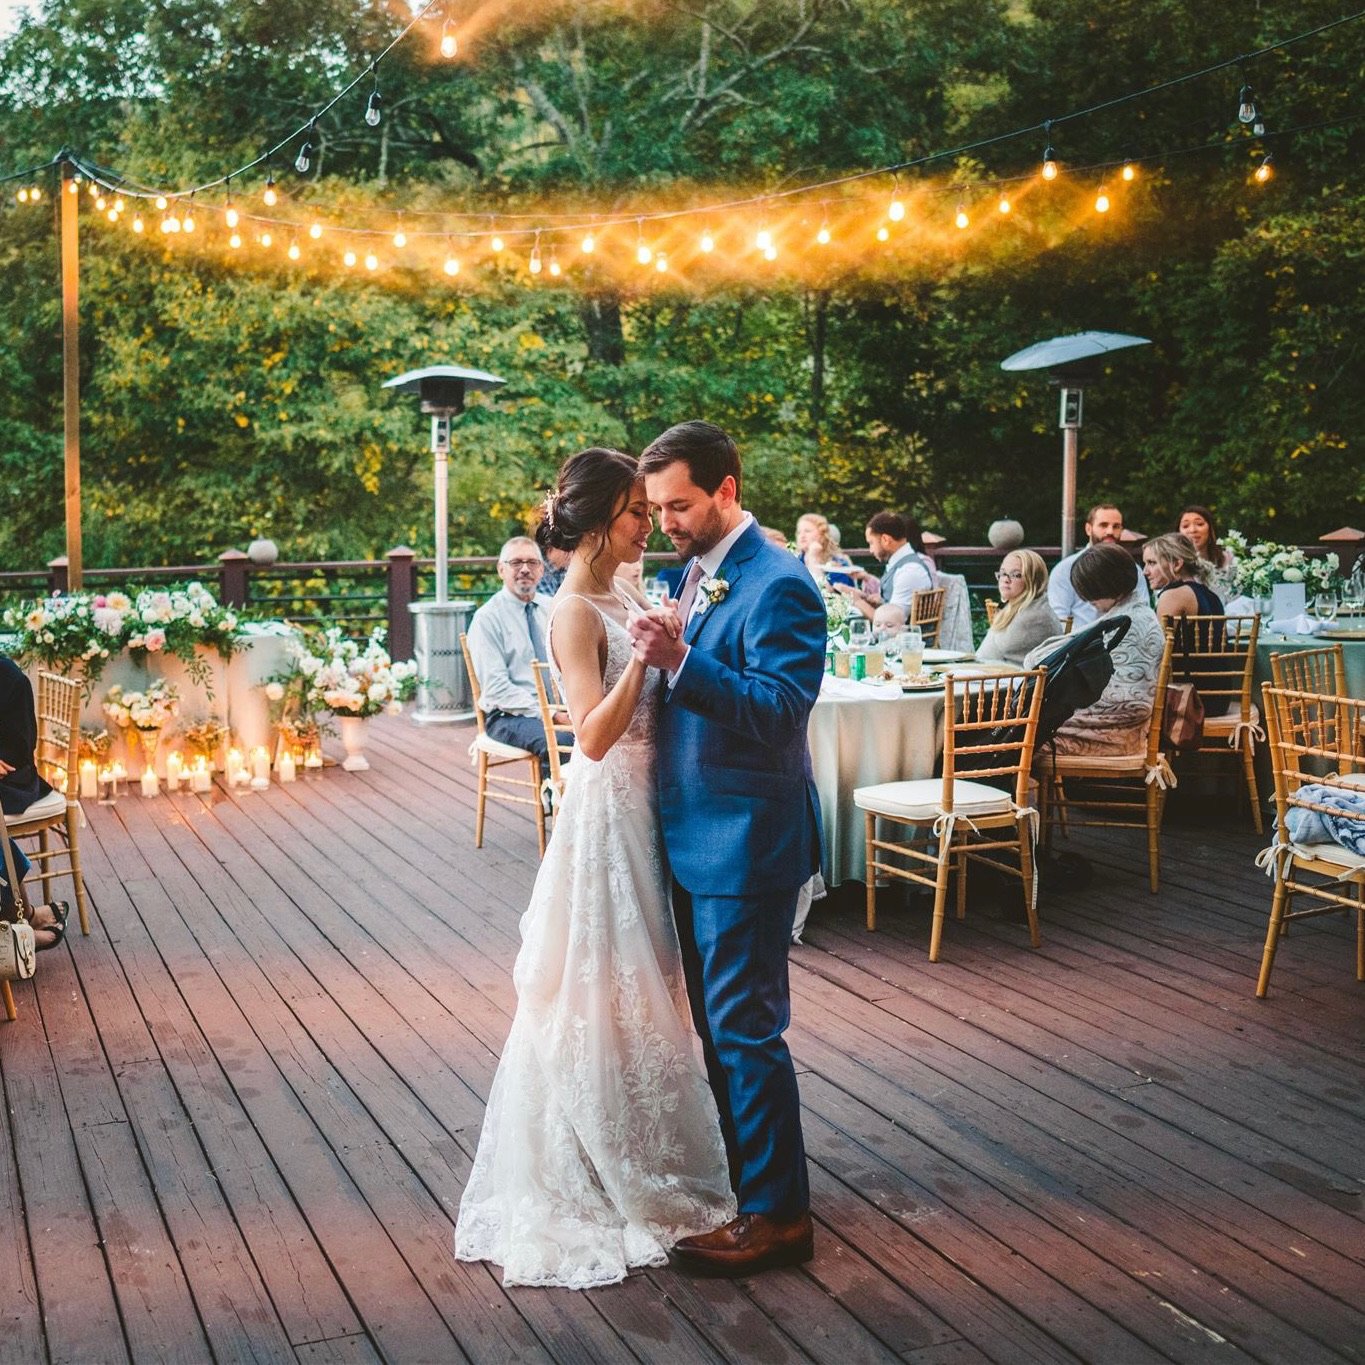 Bride and Groom dance together on porch under string lights